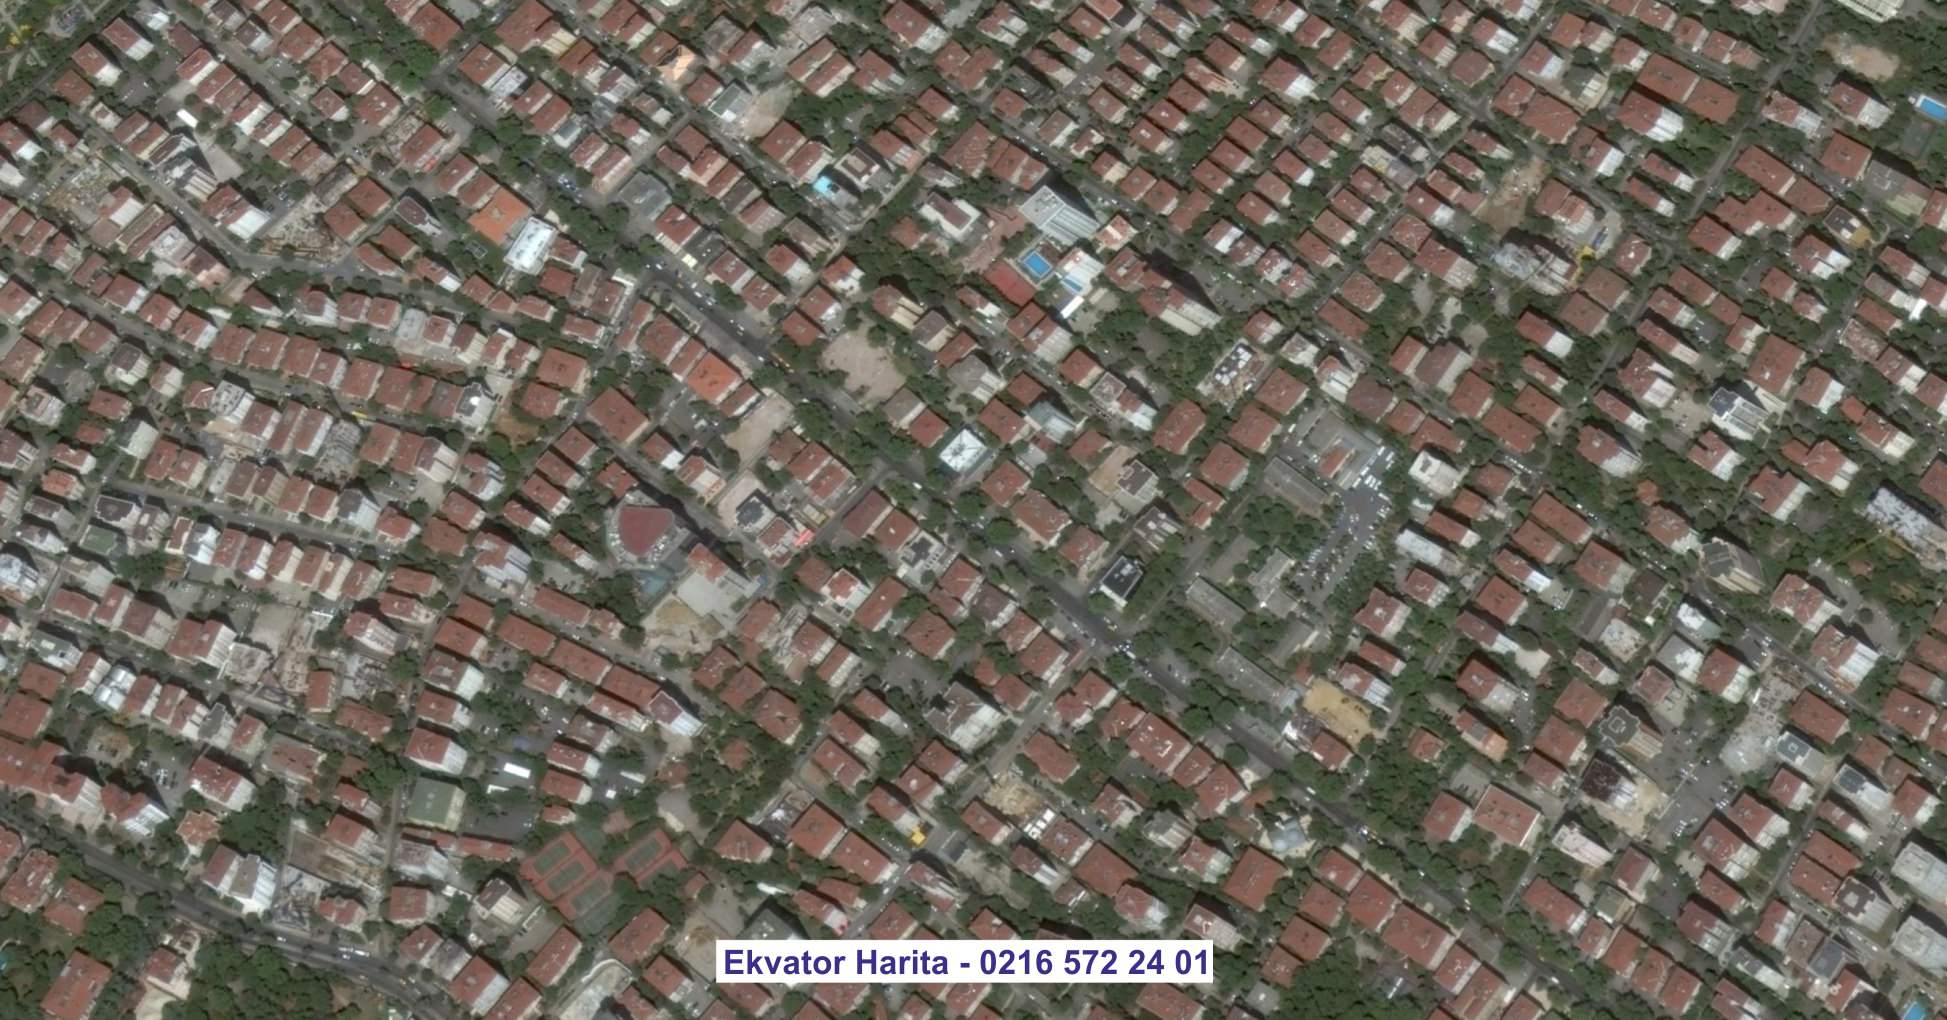 Aliağa Uydu Görüntüsü Örnek Fotoğrafı